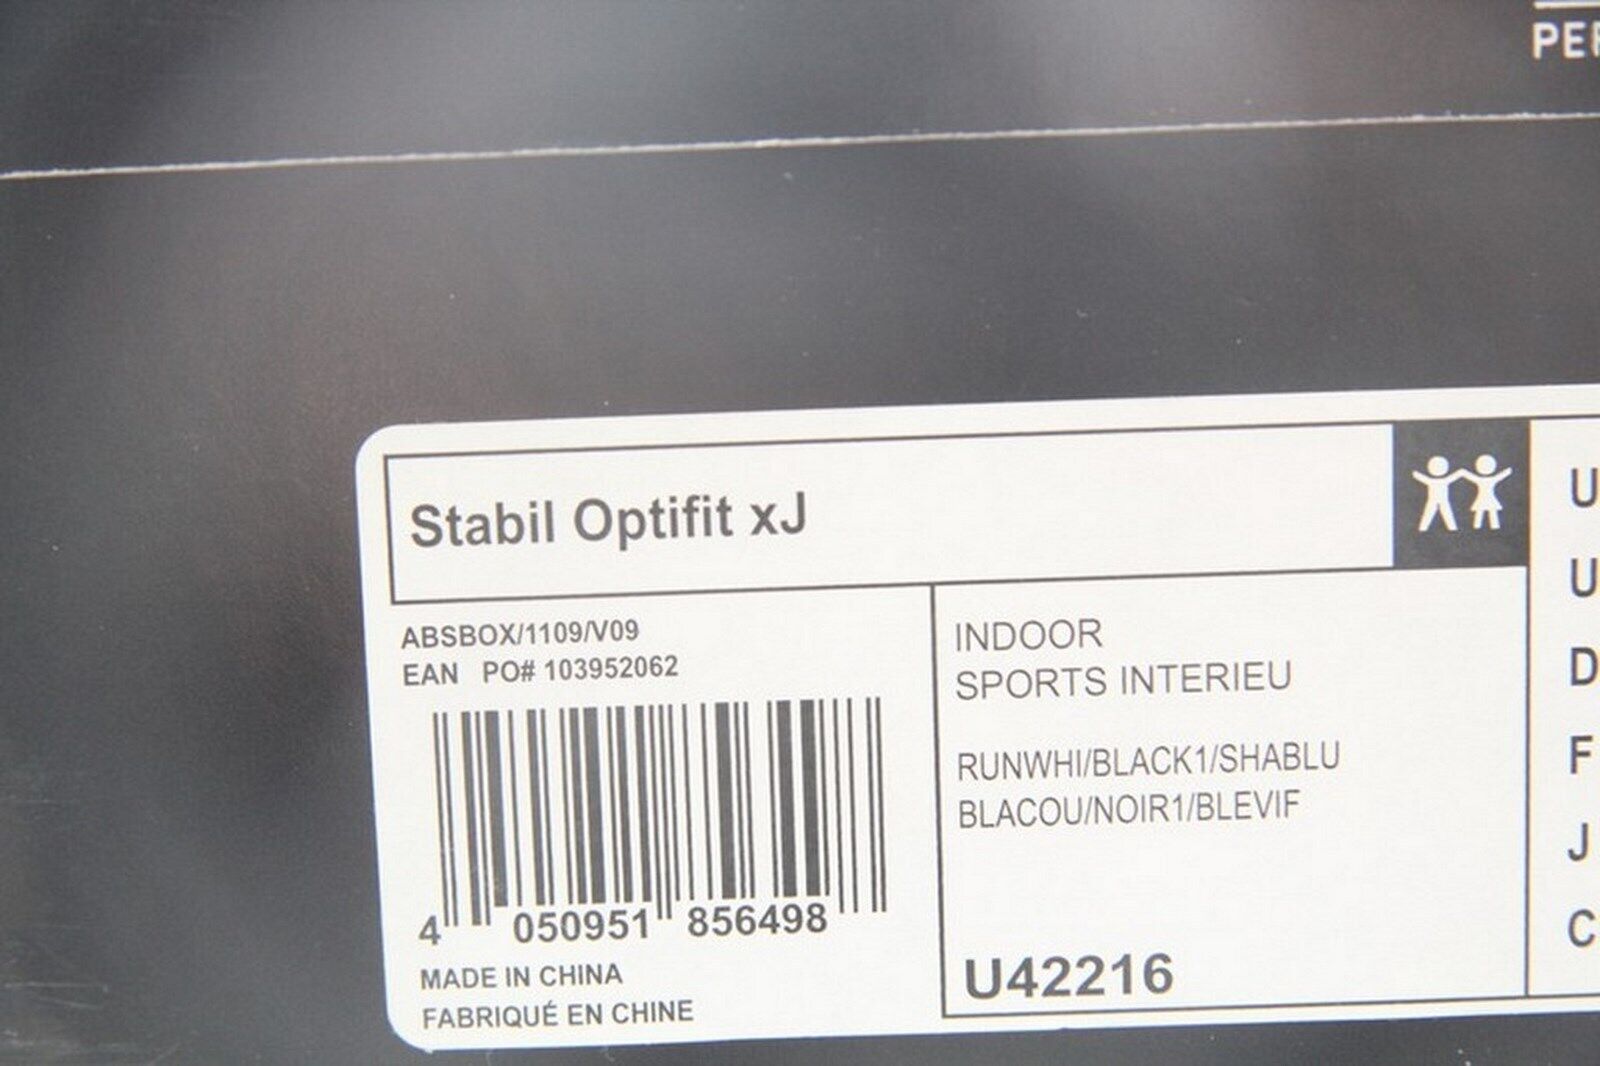 Chaussure ADIDAS STABIL OPTIFIT XJ speedcut T: blanc UK 13.5 kid eBay